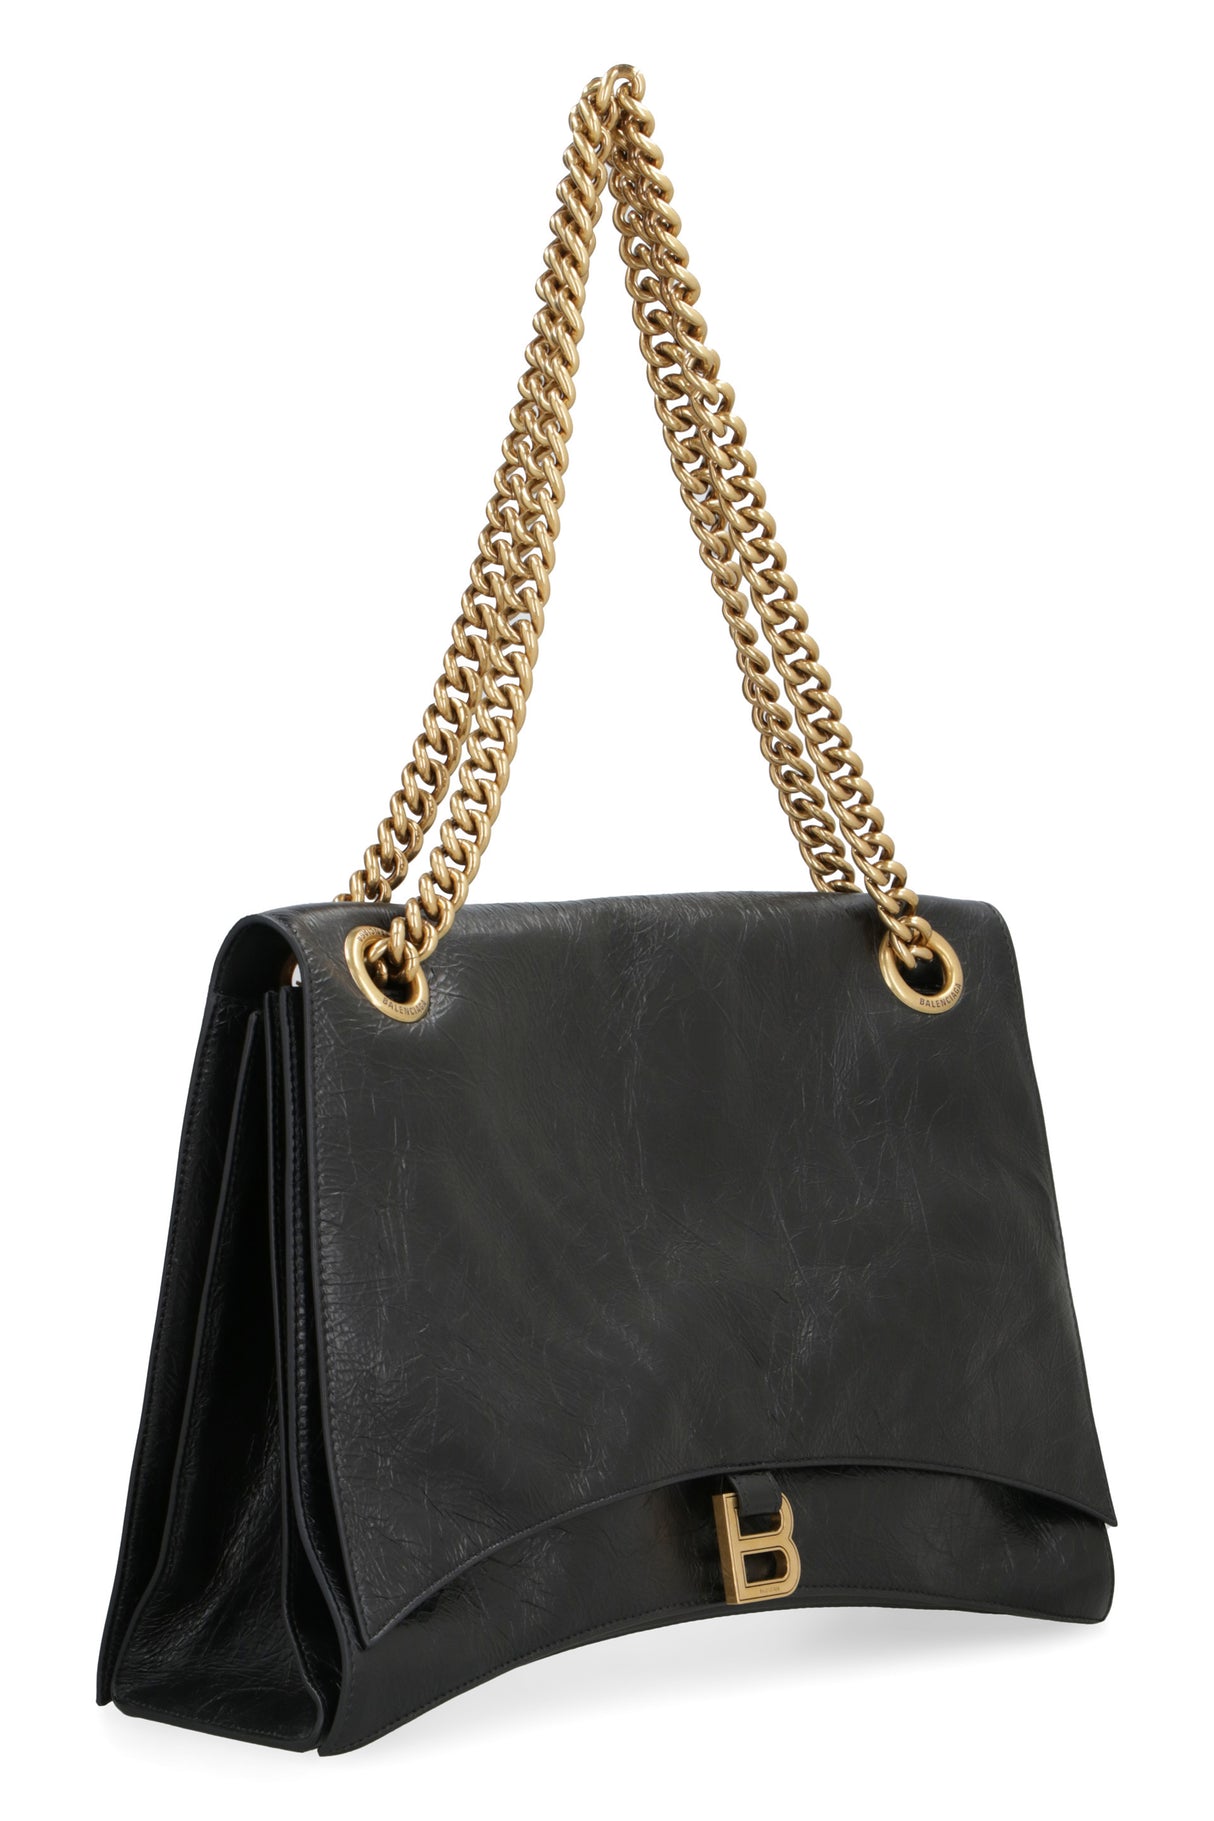 Túi xách tay Balenciaga cao cấp màu đen sang trọng và đẳng cấp dành cho phái nữ